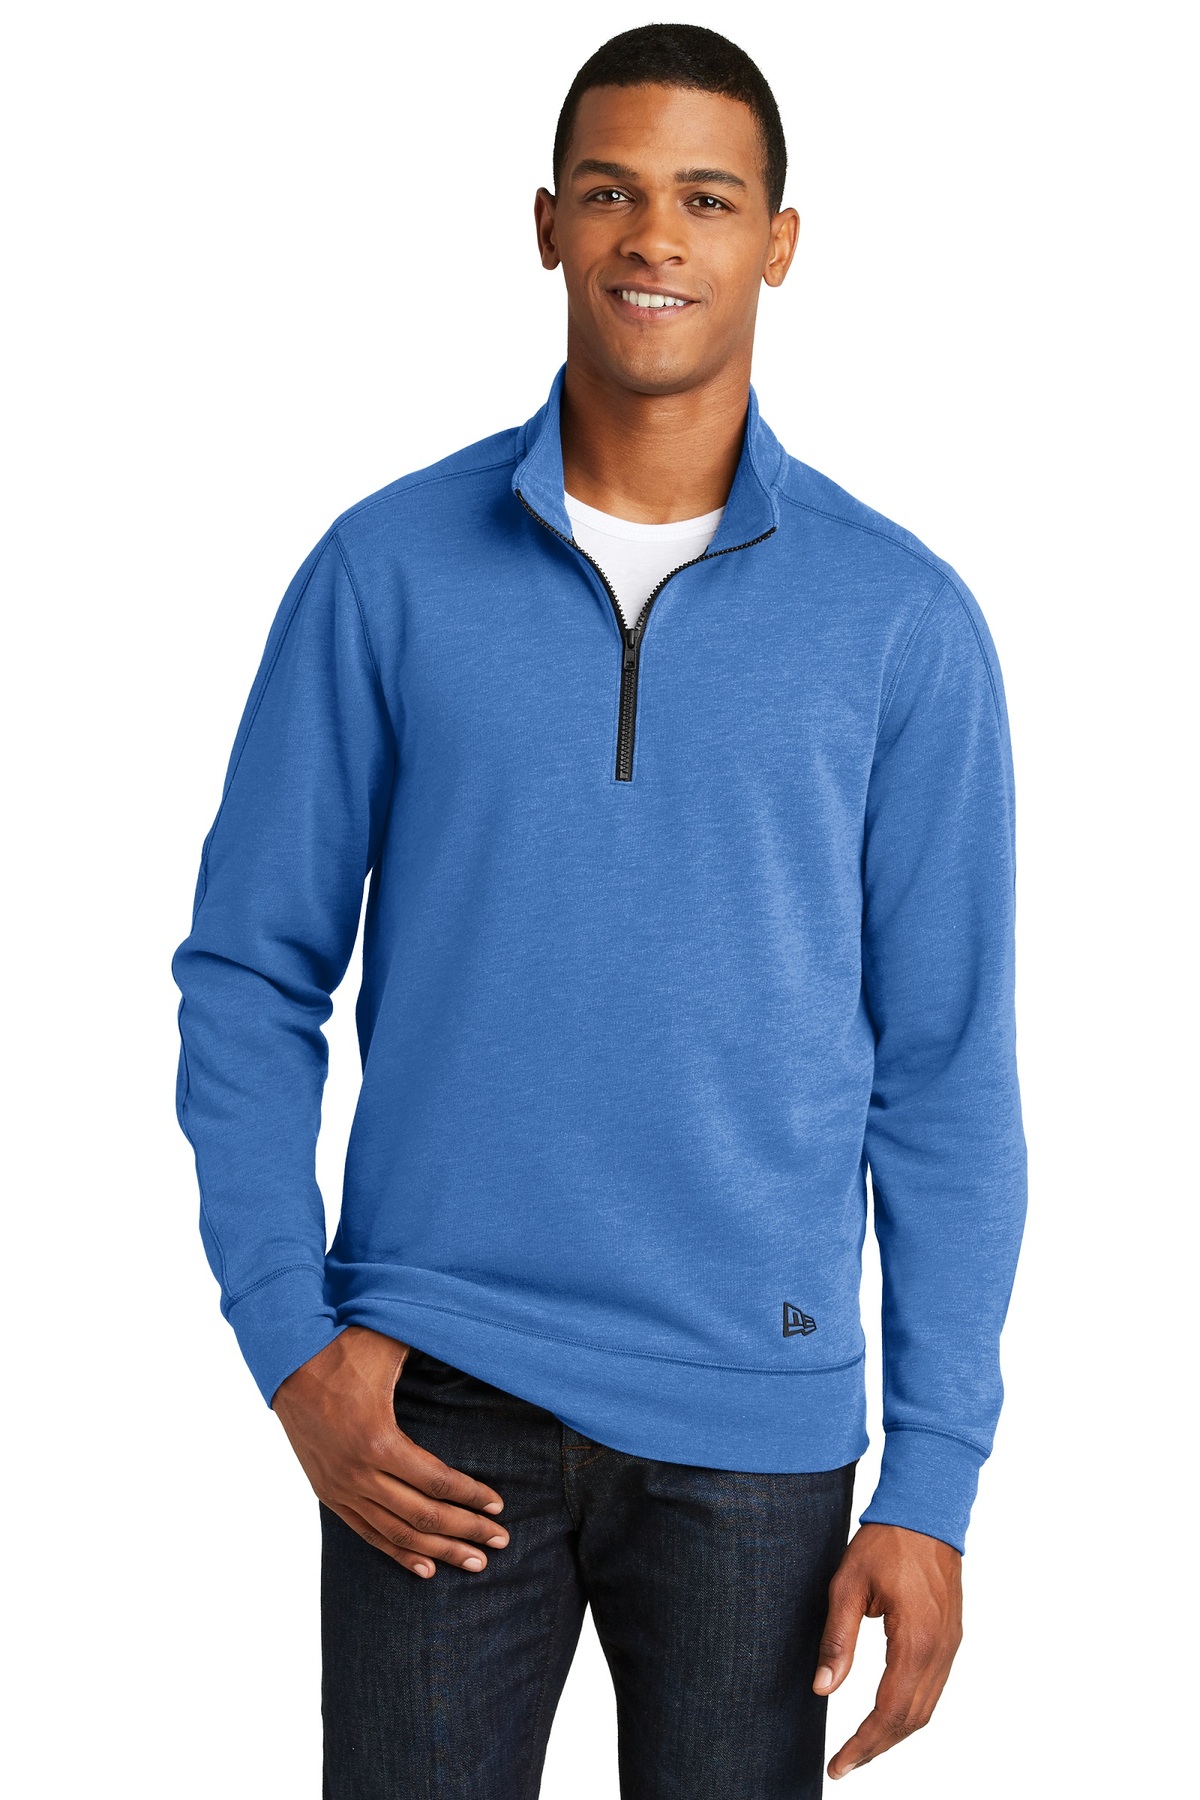 New Era Embroidered Men's 1/4-Zip Pullover Tri-Blend Sweatshirt ...